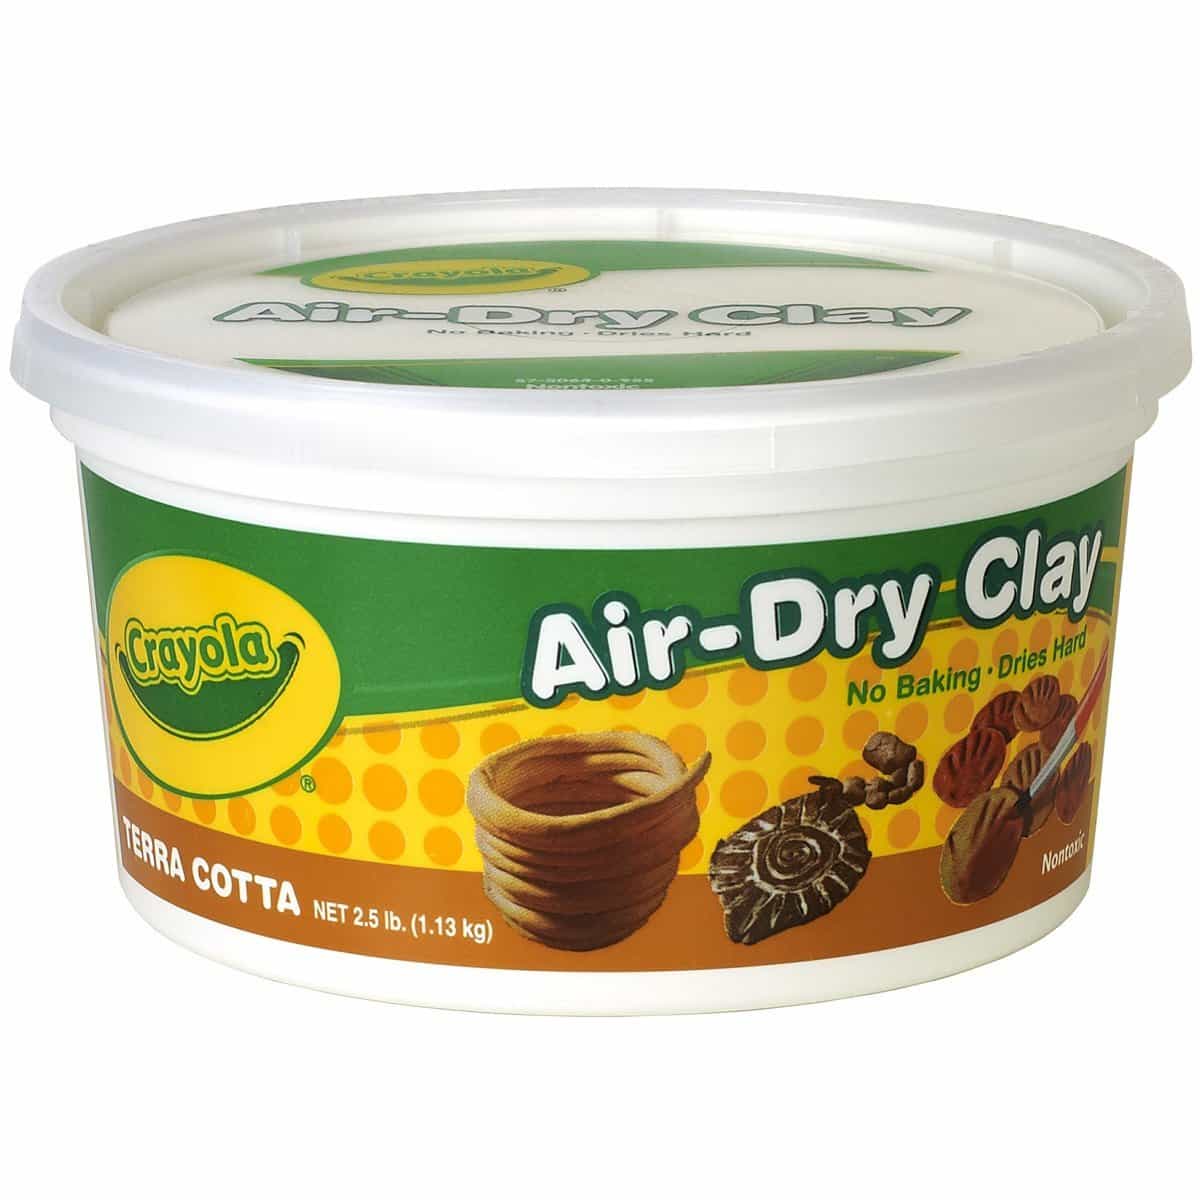 Air dry clay